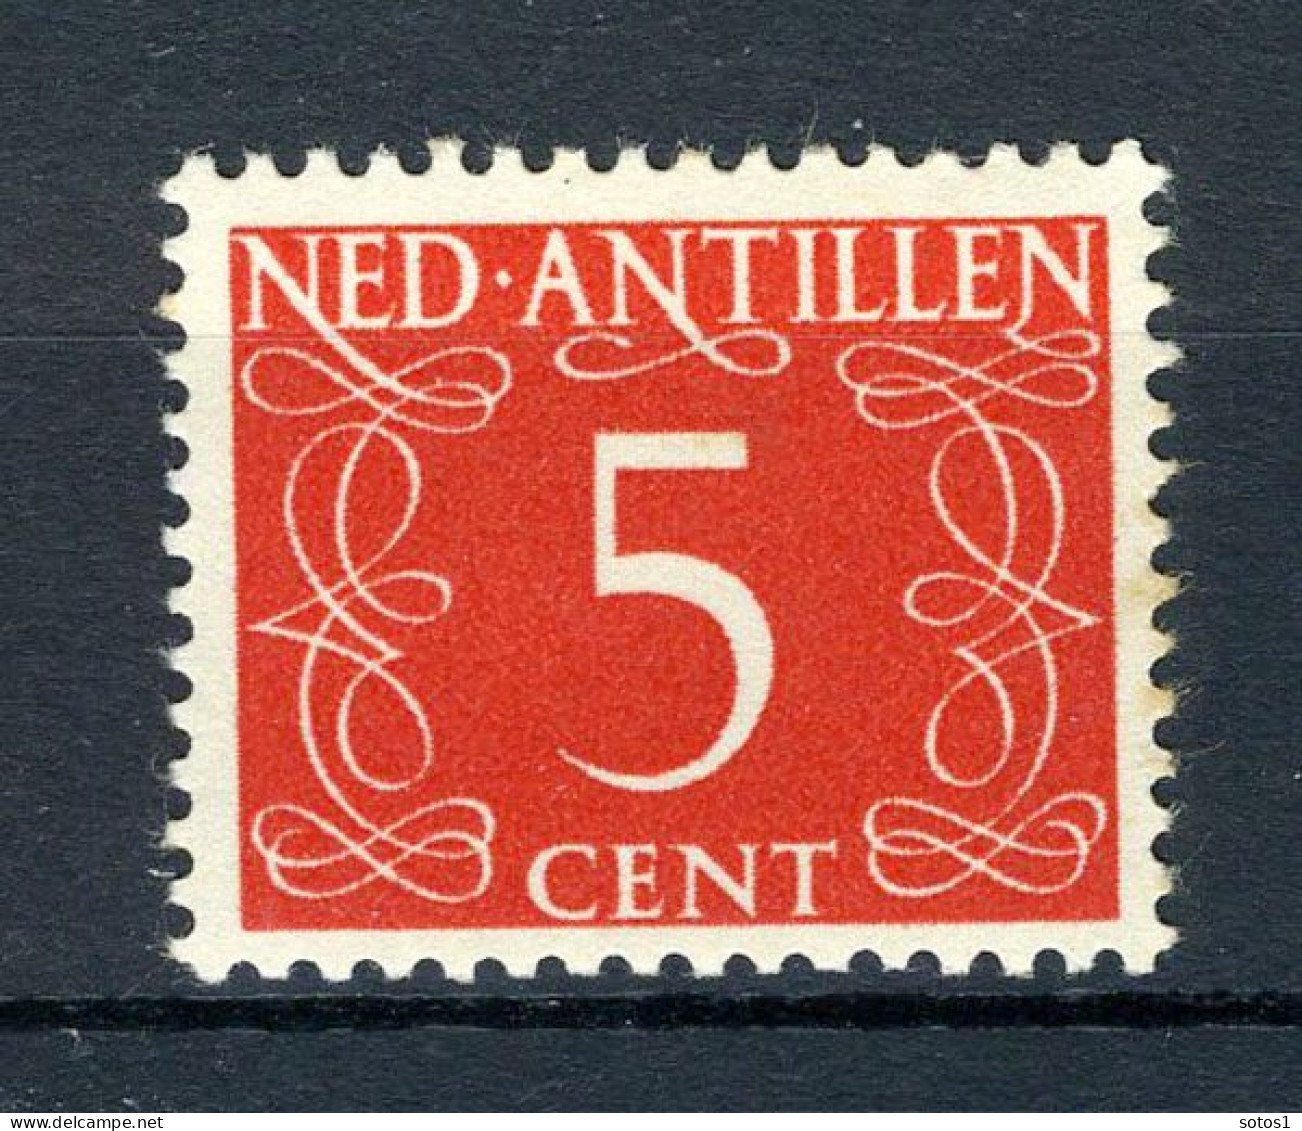 NL. ANTILLEN 217 MNH 1950 - Cijfer. - Niederländische Antillen, Curaçao, Aruba